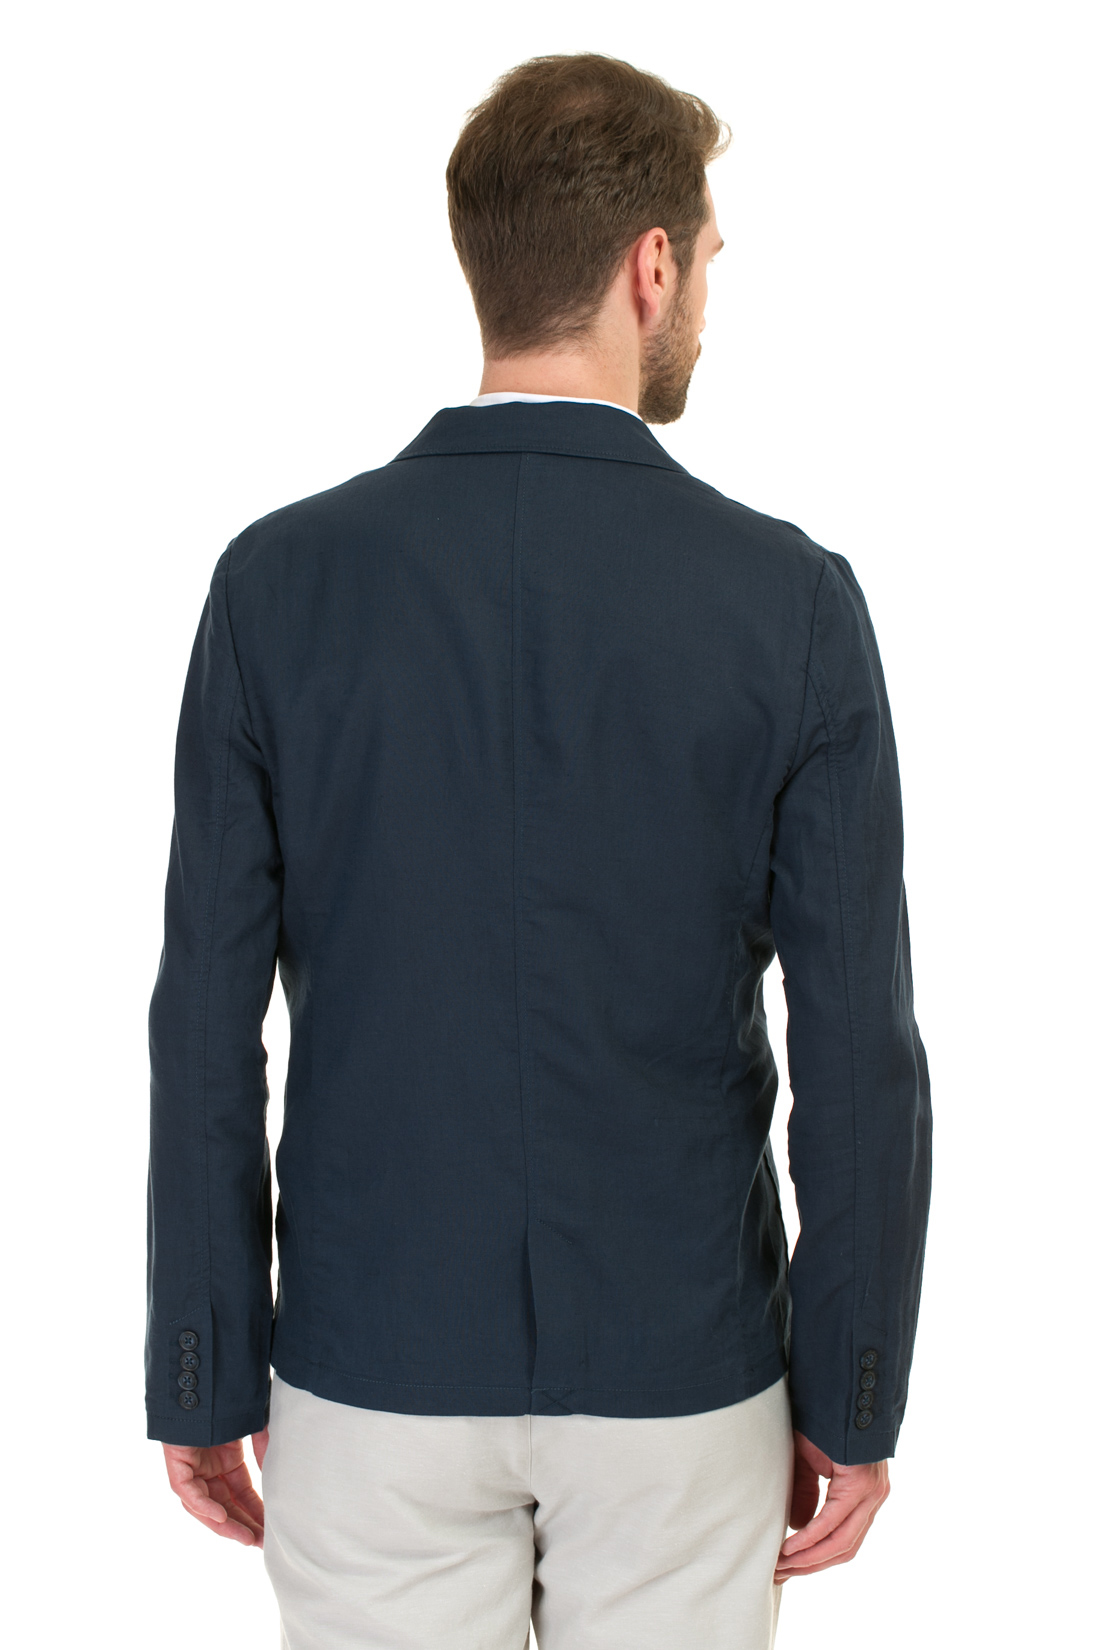 Пиджак из натуральных волокон (арт. baon B627002), размер S, цвет синий Пиджак из натуральных волокон (арт. baon B627002) - фото 2